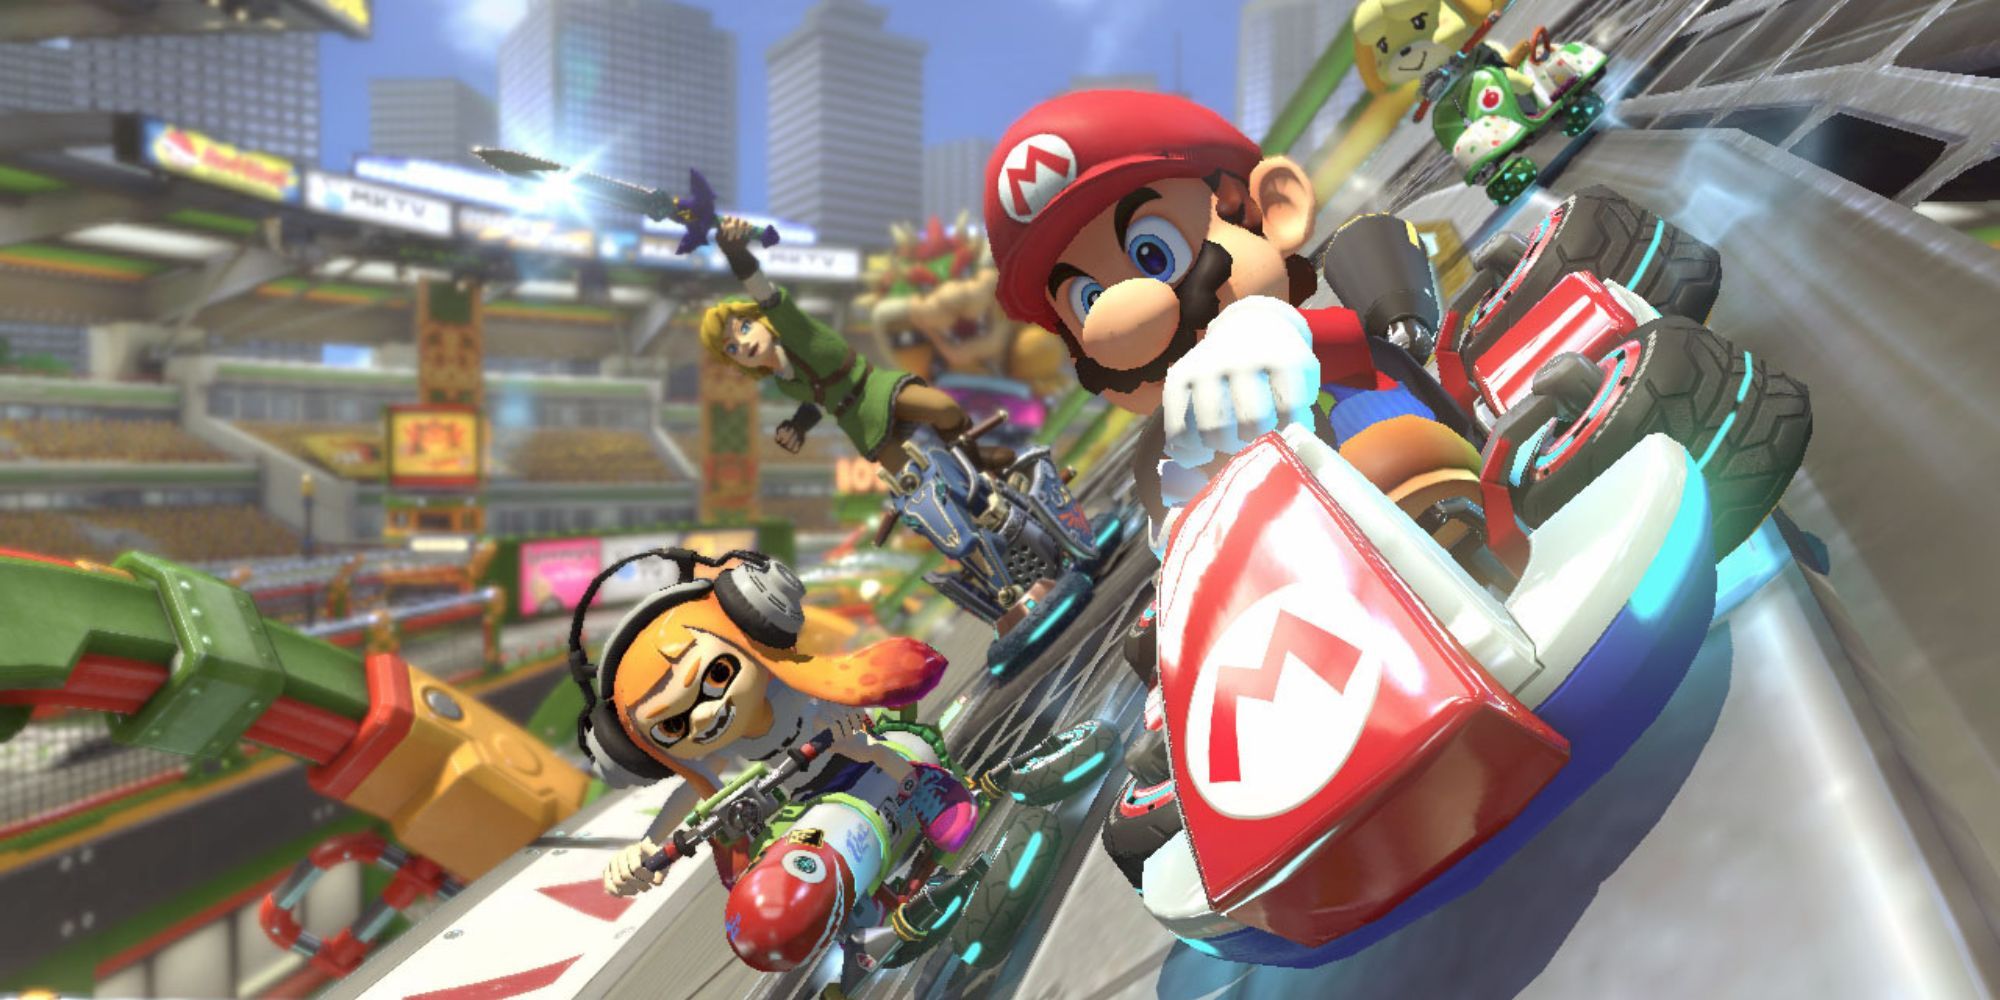 Mario competindo com outros personagens da Nintendo em Mario Kart 8